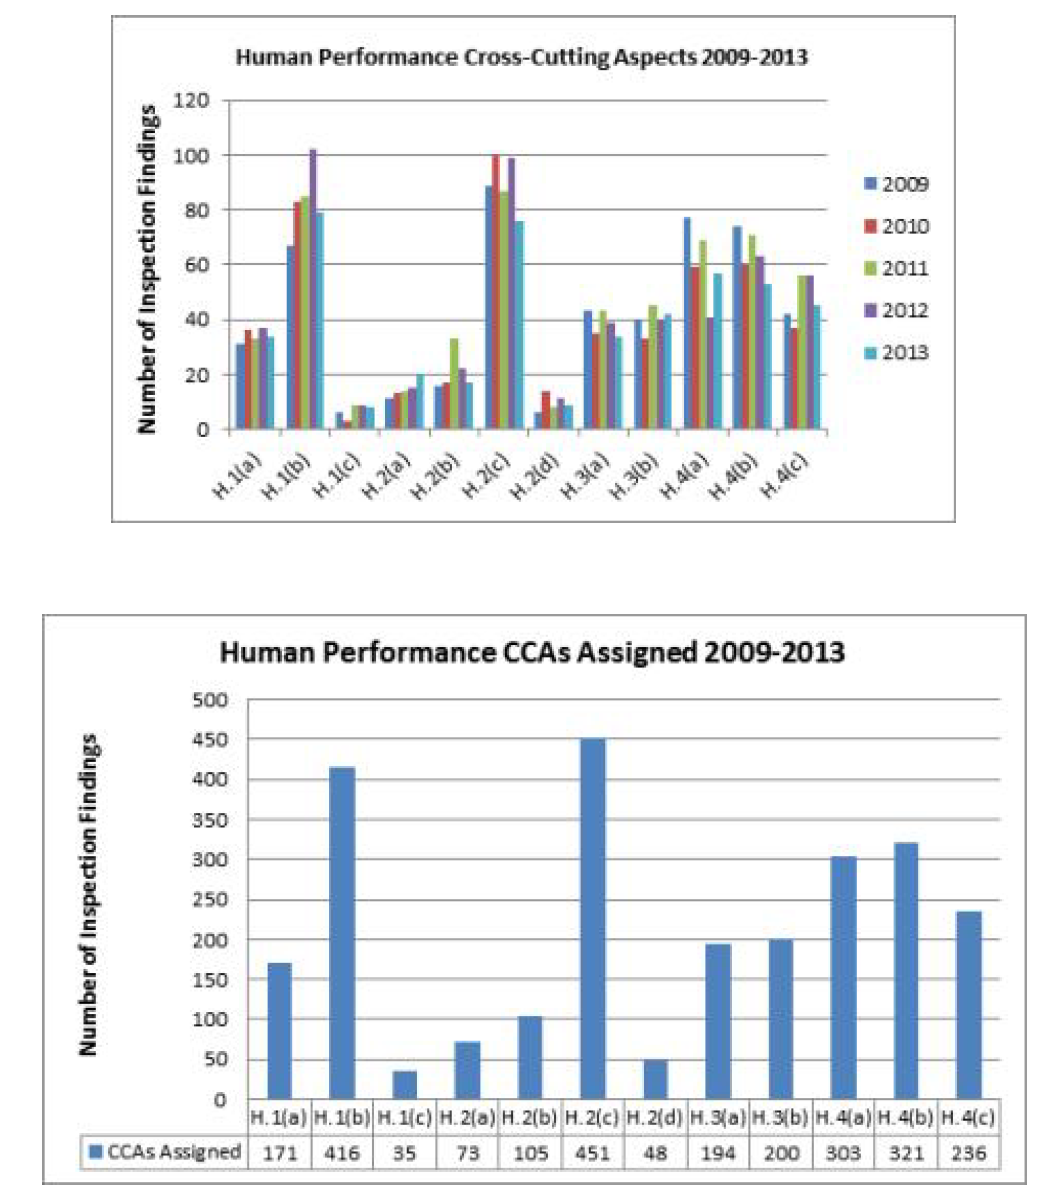 미국 원전의 2009-2013년 공통현안 측면(CCA) 중 인적수행도(Human Performance) 관련 부여 현황